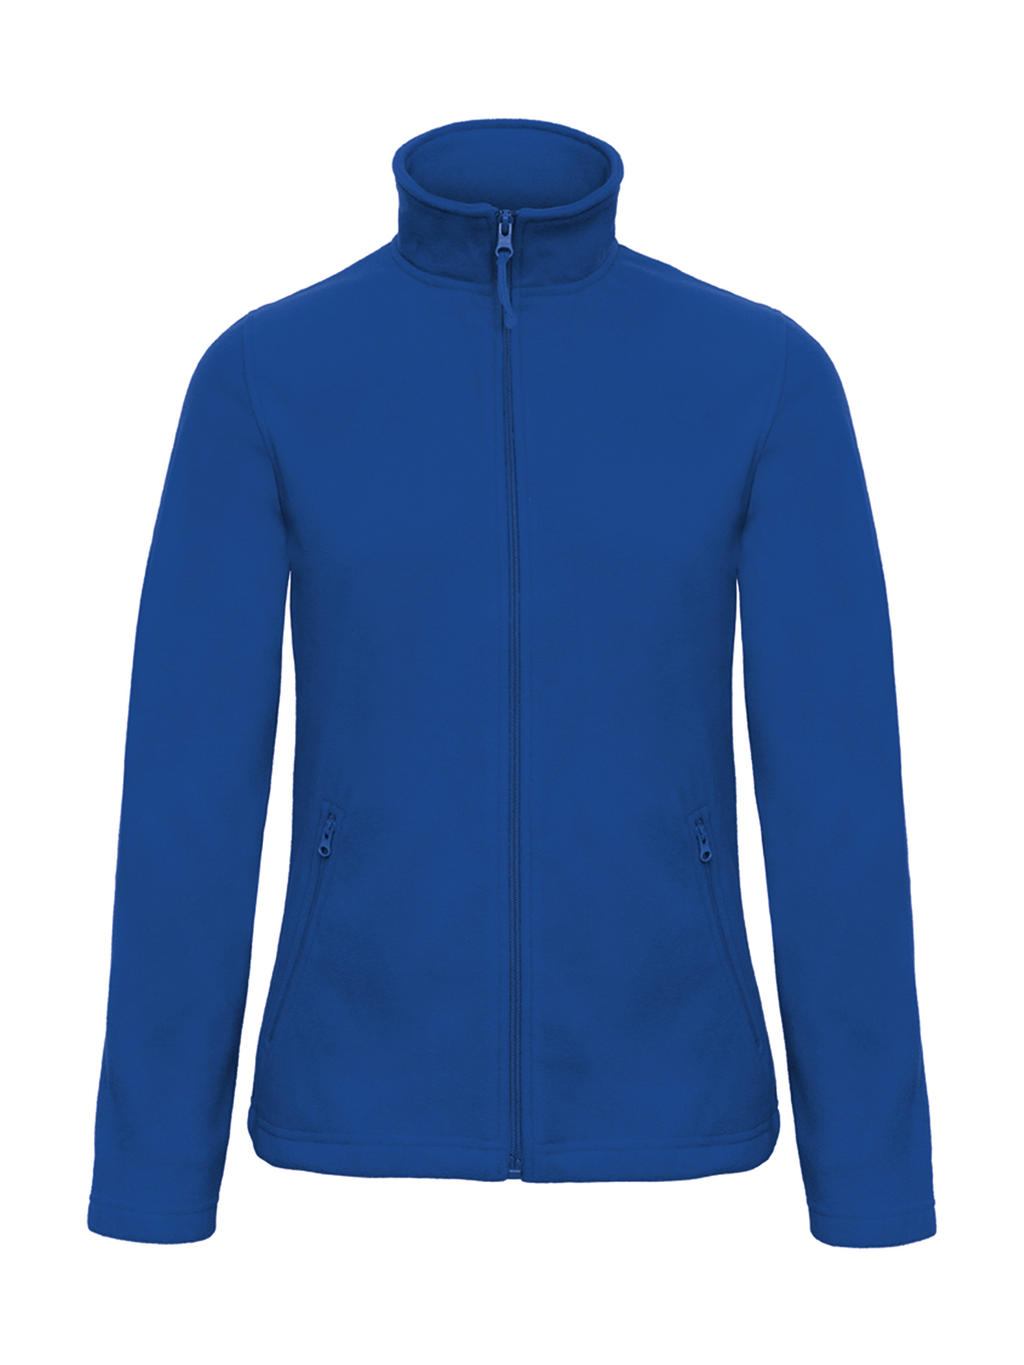  ID.501/women Micro Fleece Full Zip in Farbe Royal